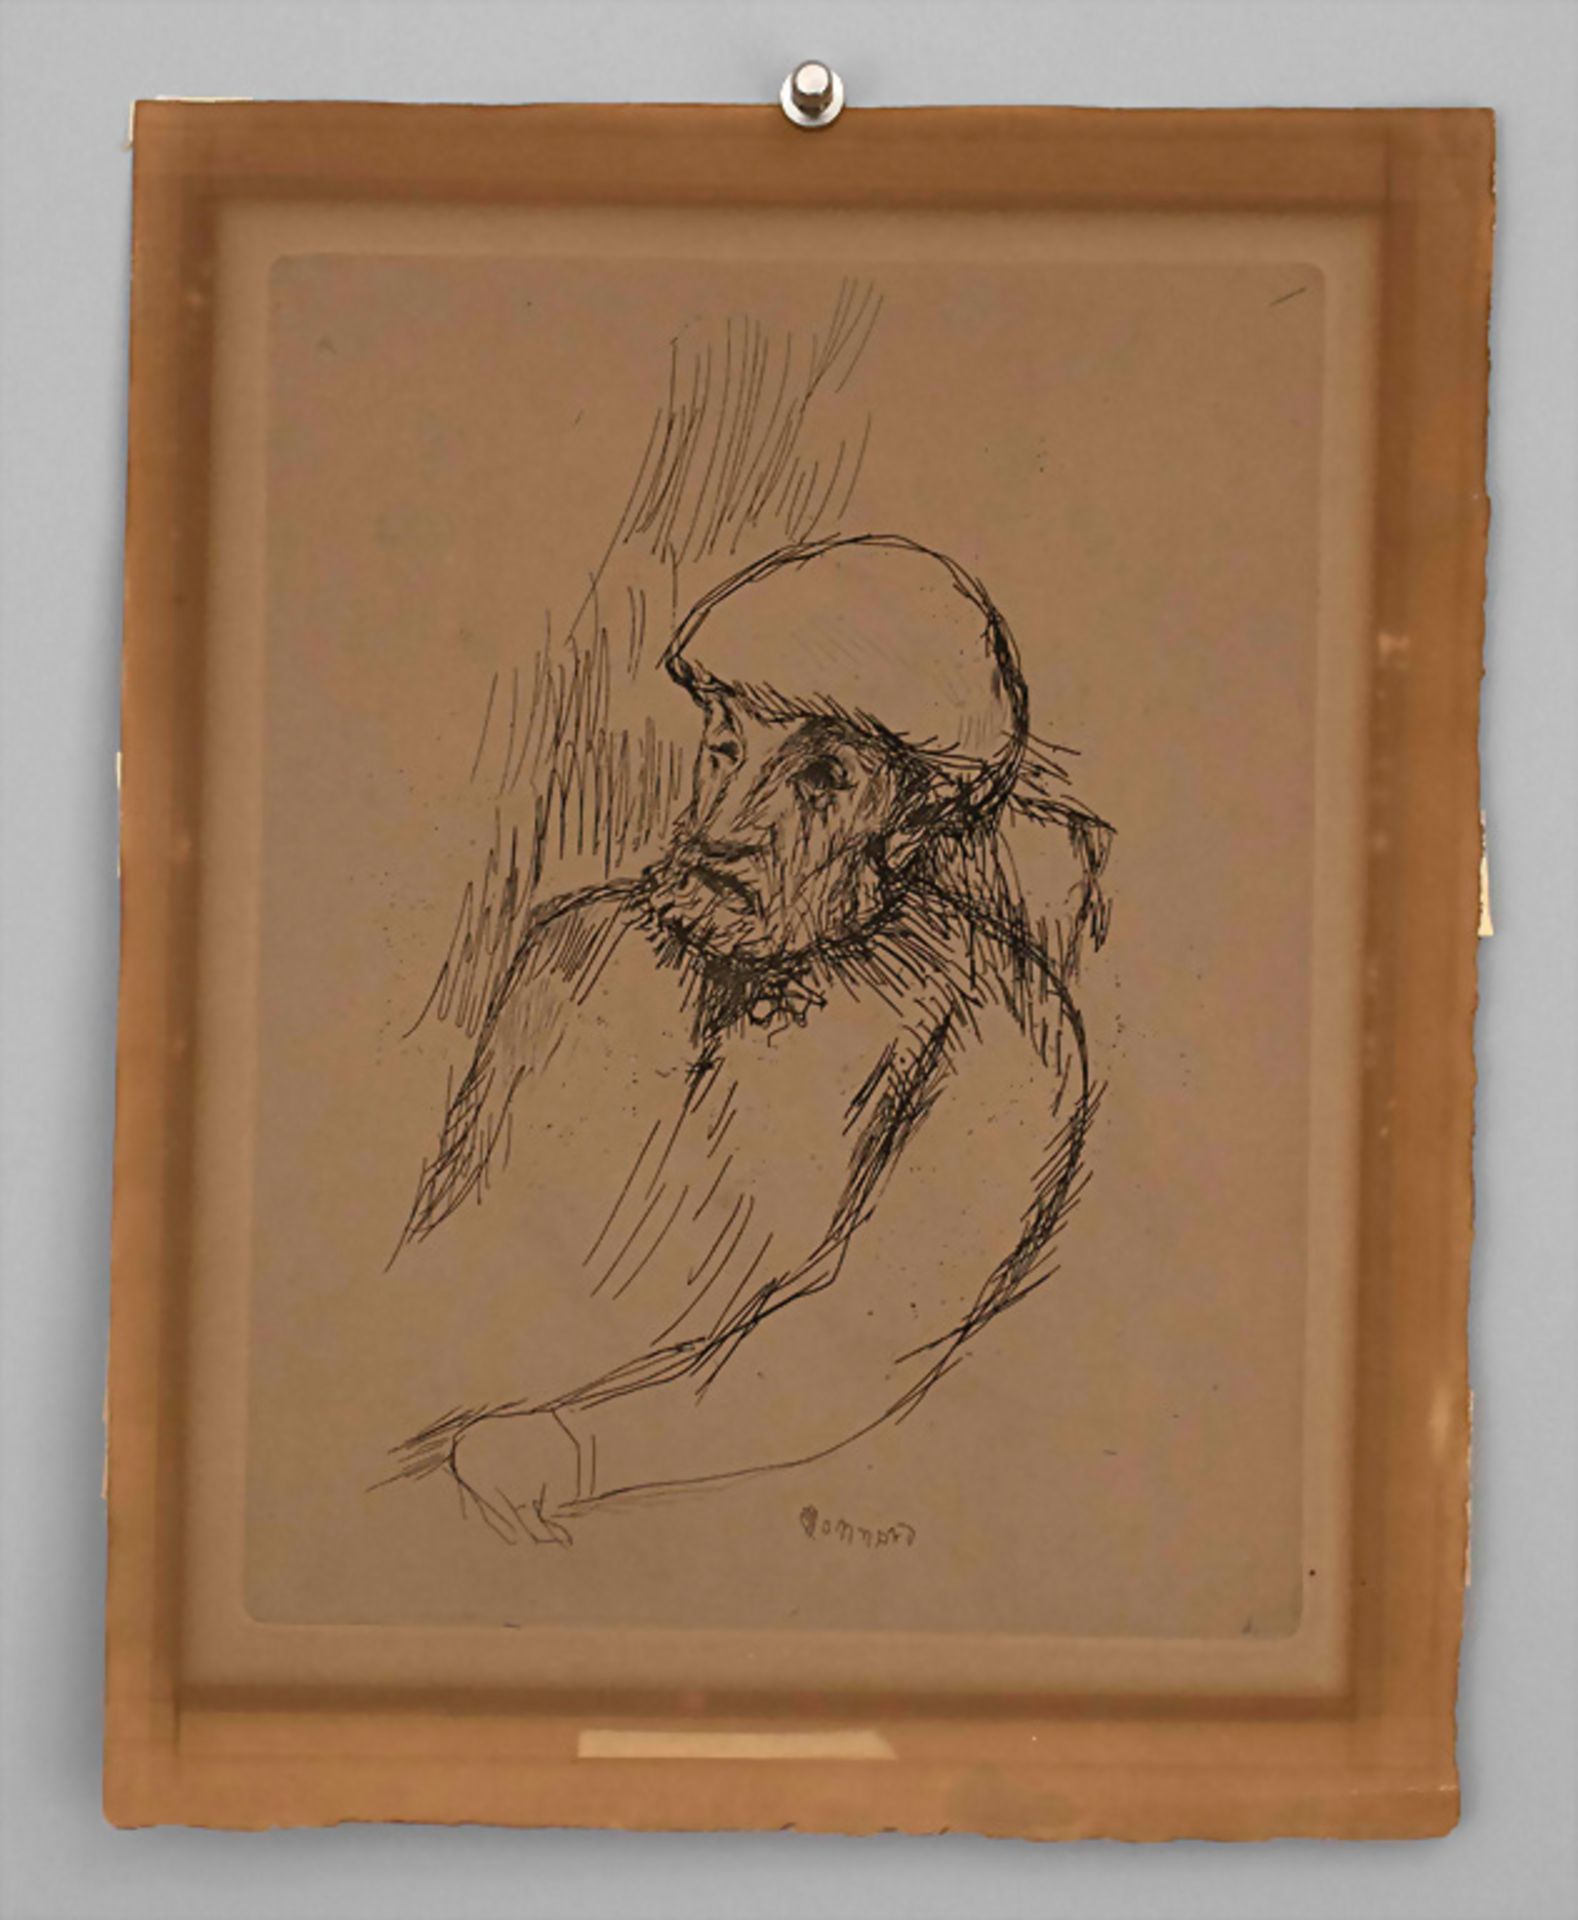 Pierre BONNARD (1867-1947), 'Portrait de Renoir', nach 1916